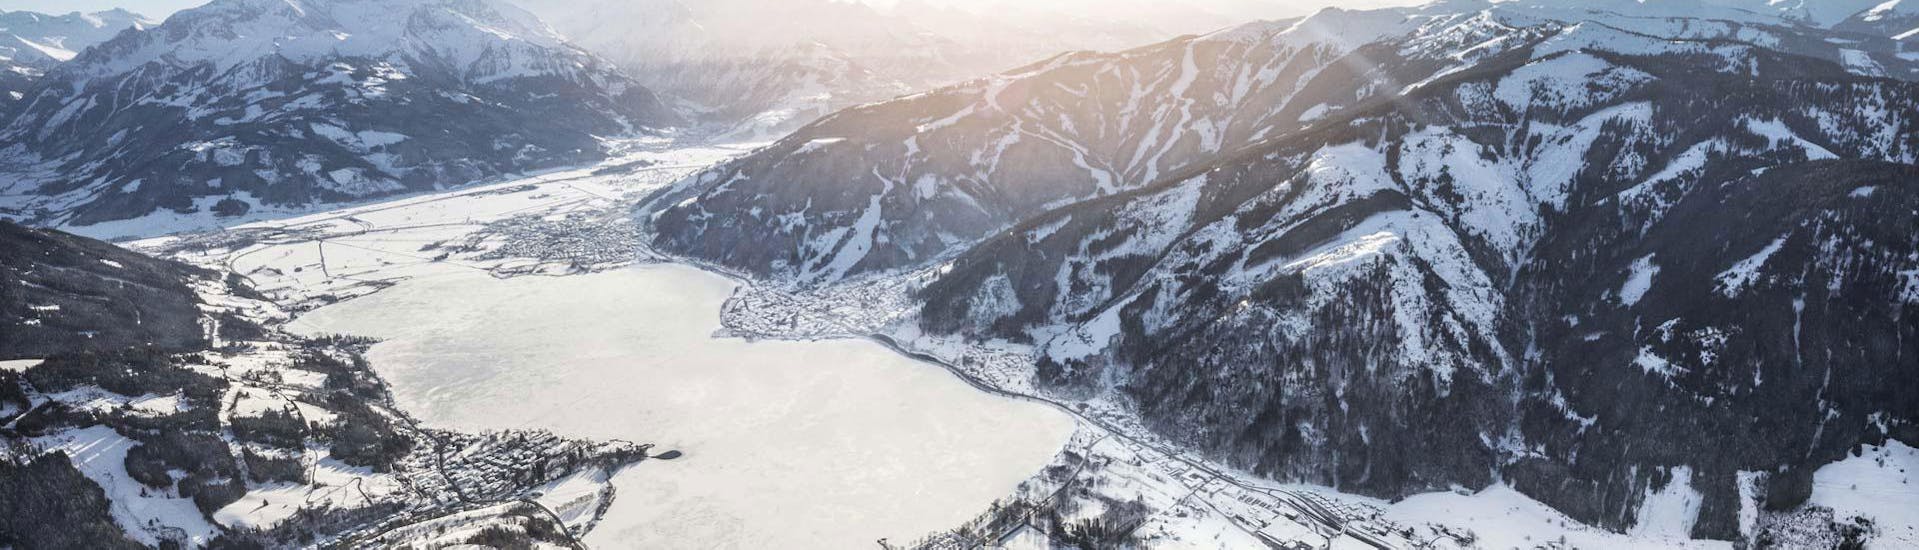 Ein Bild der wunderschönen schneebedeckten Berge Kapruns von Skischule Bruck Fusch.